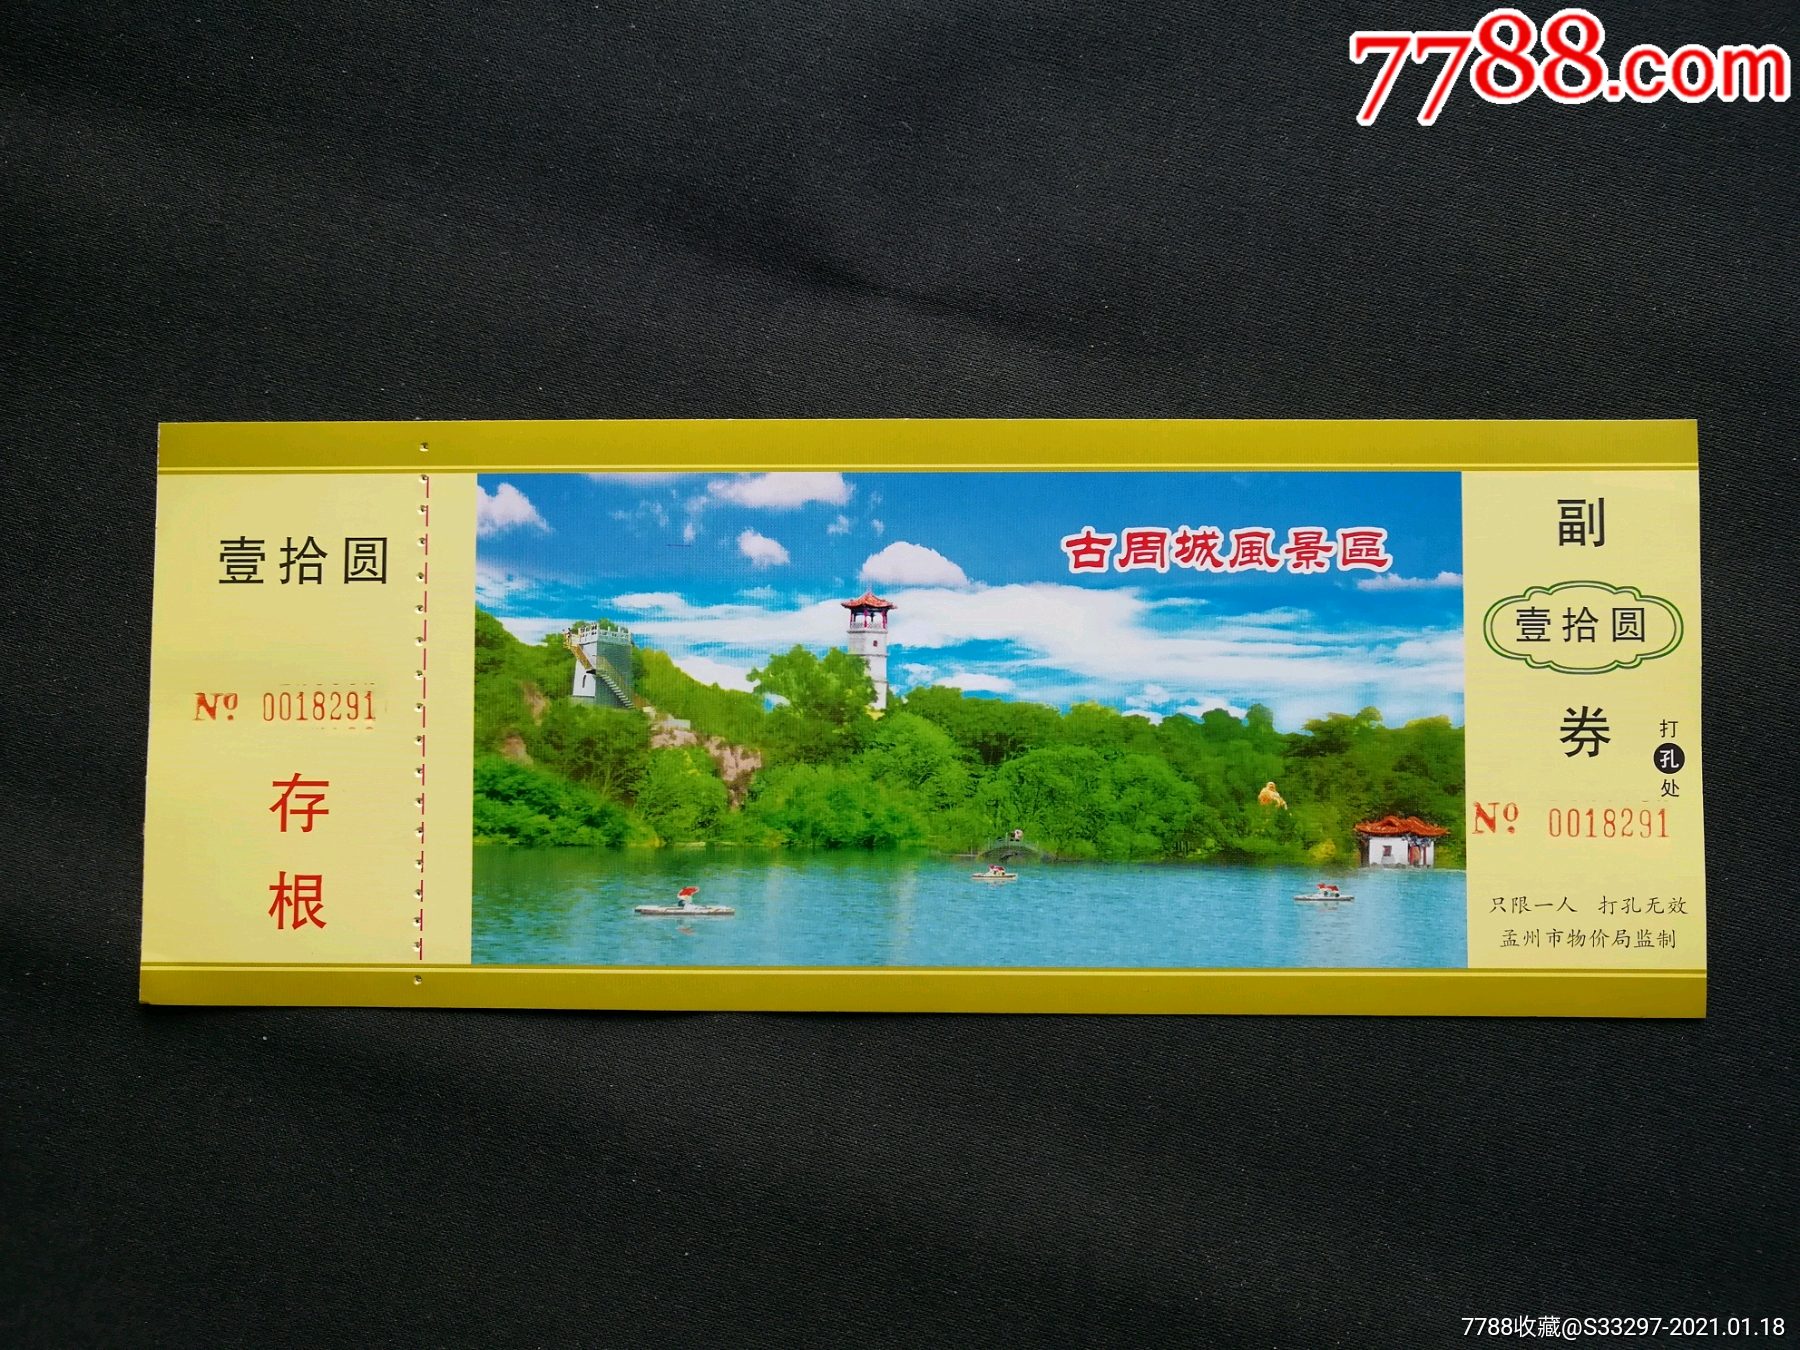 7011工程旅游区门票图片